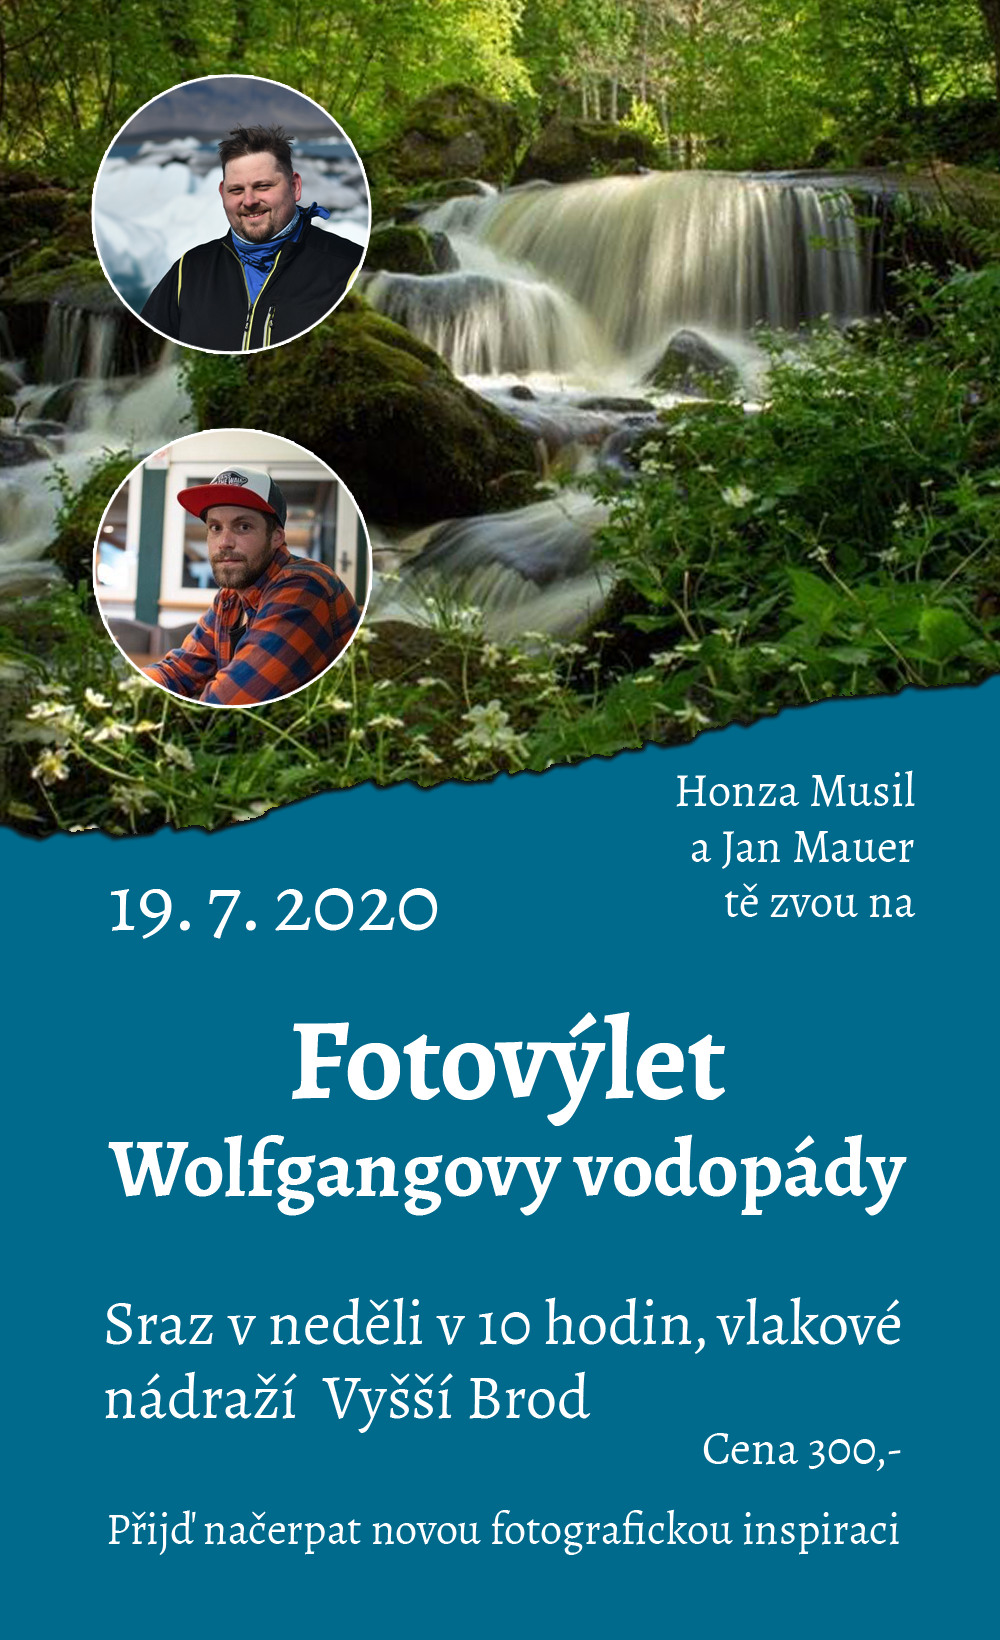 Fotovýlet na Wolfgangovy vodopády